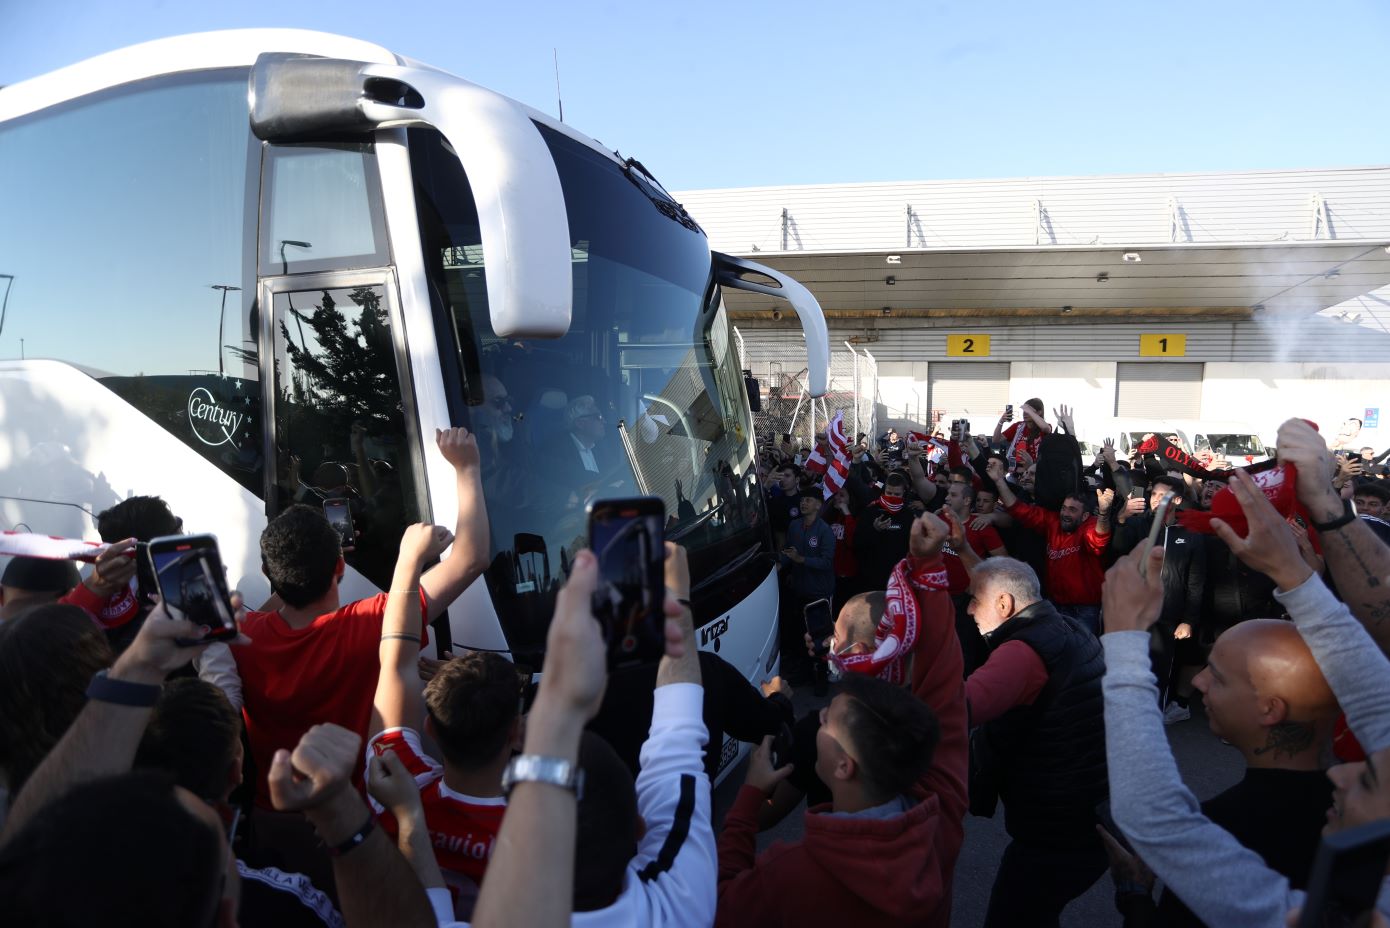 Μετά τον θρίαμβο η αποθέωση – Οι οπαδοί υποδέχτηκαν την αποστολή του Ολυμπιακού στο αεροδρόμιο